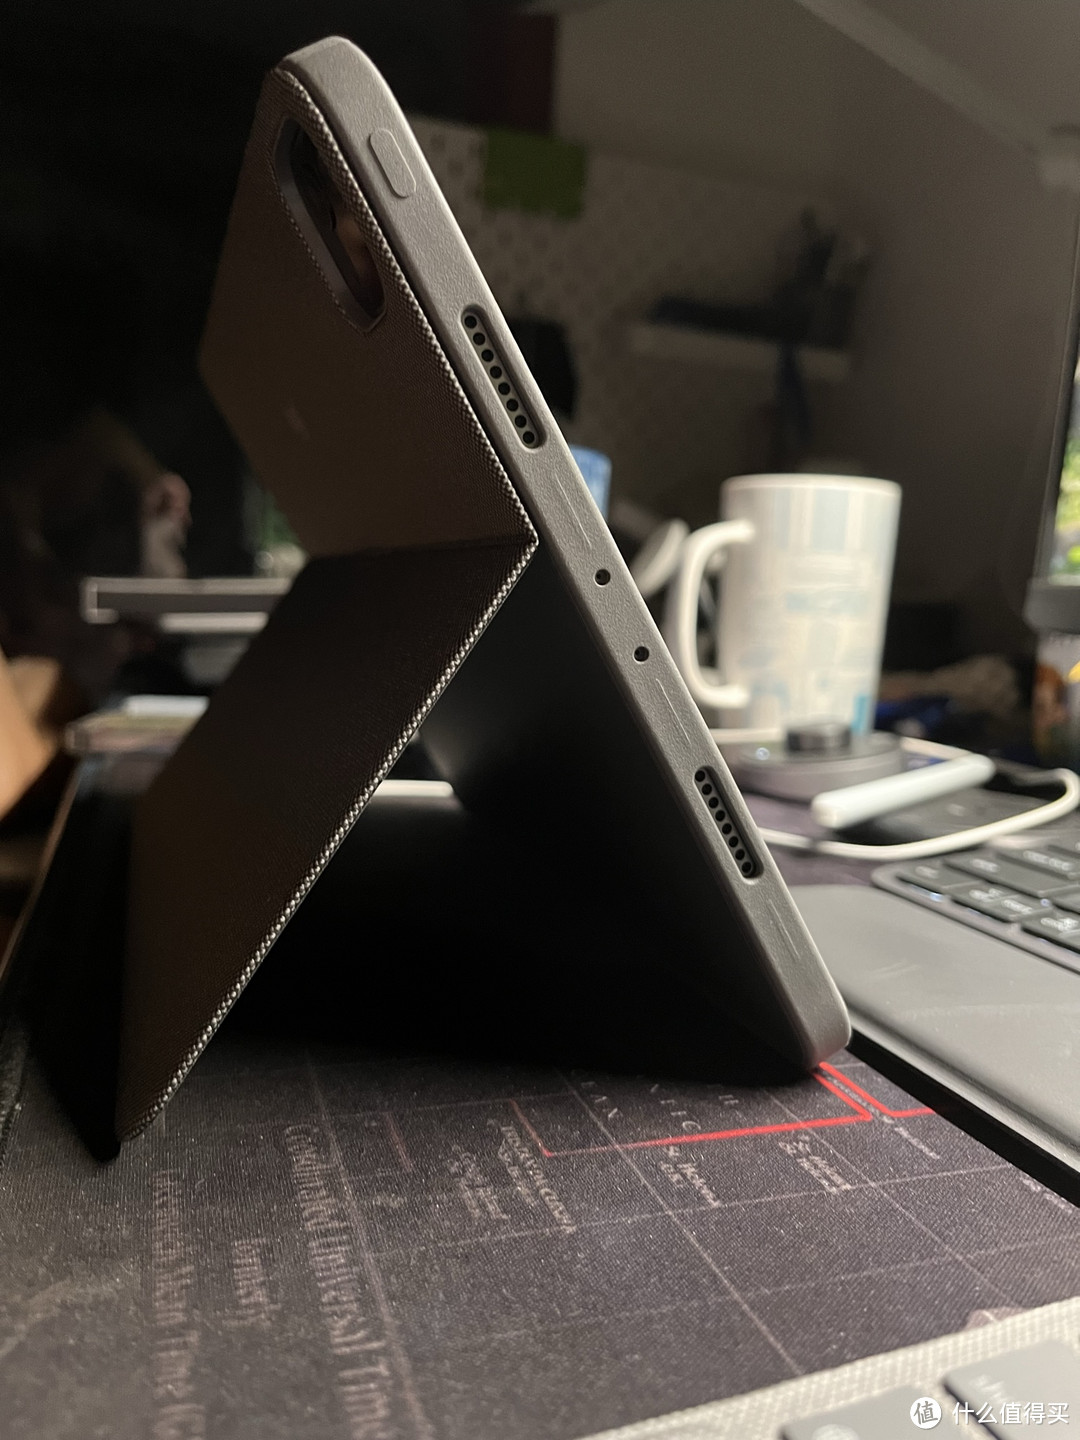 无键盘的桌面模式，背面支架类似Surface的设计，讨巧